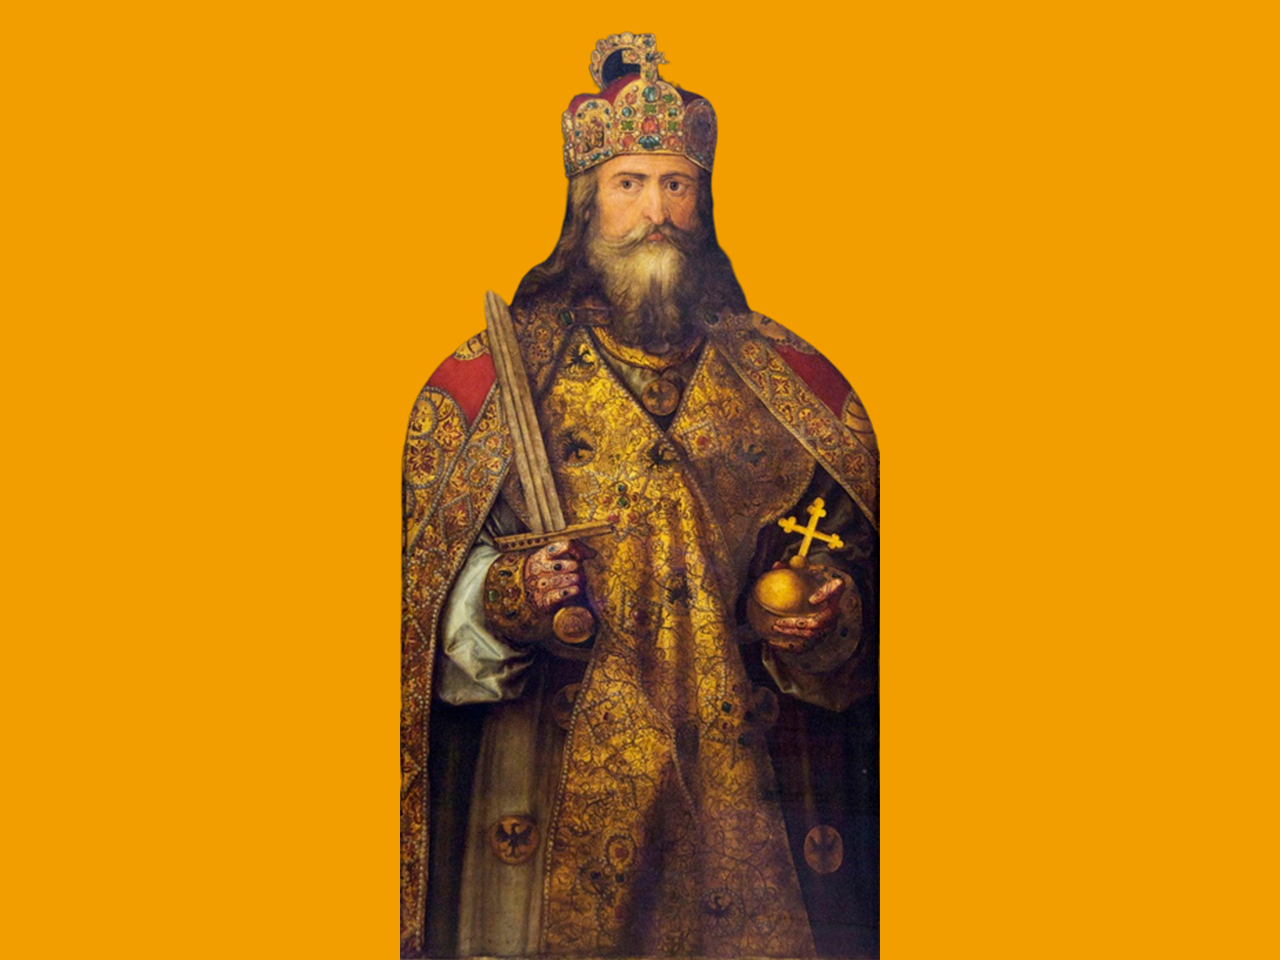 Portrait de Charlemagne par Albrecht Dürer